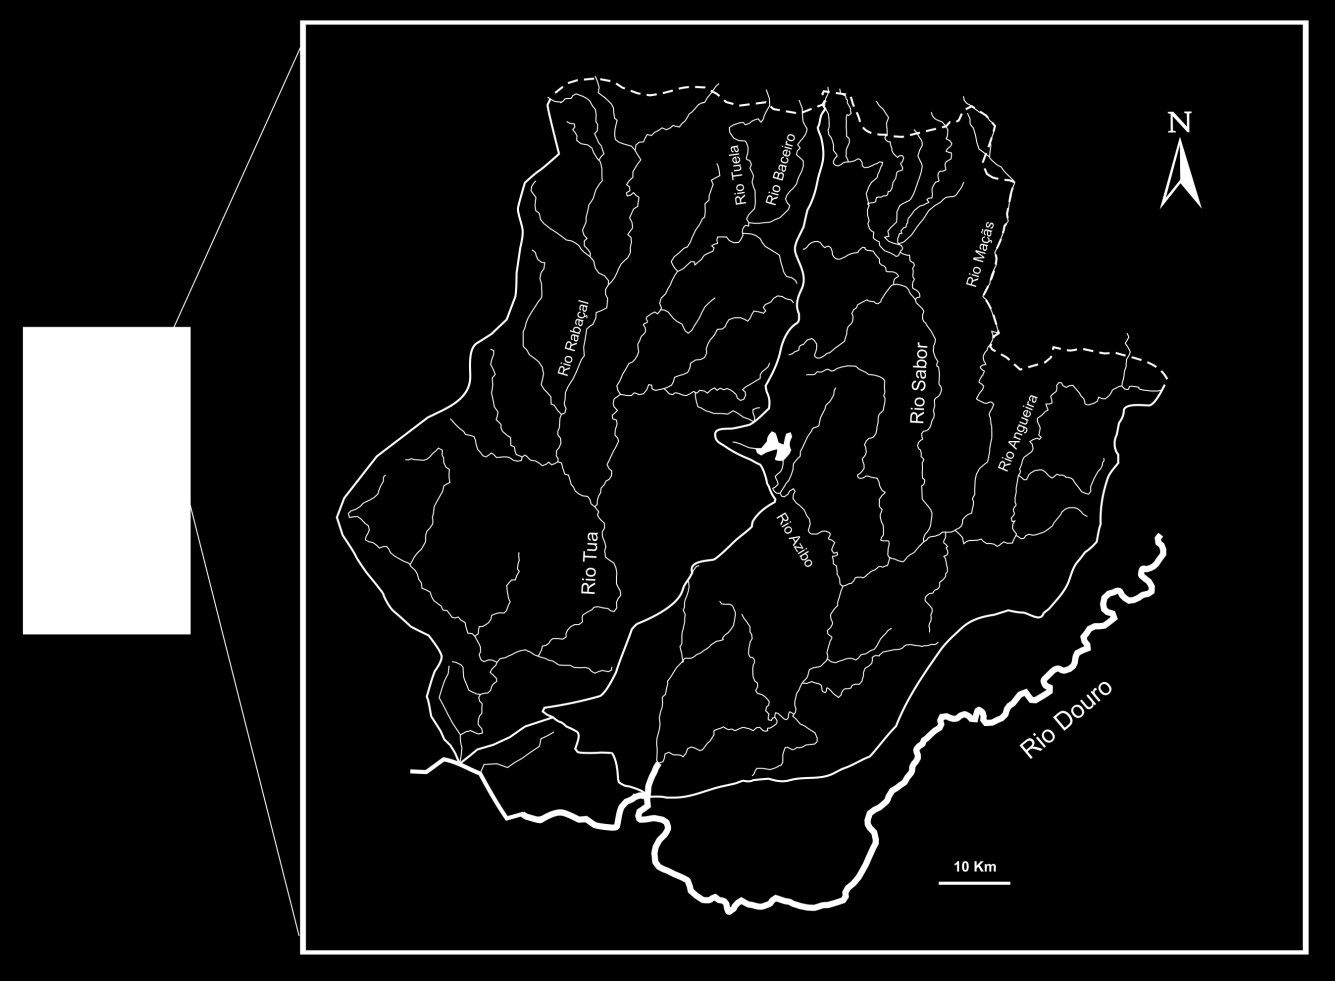 T1 T4 T3 T2 T5 T6 S1 S2 T7 S3 T8 S5 S4 Rio Sabor Rio Tua Figura 1. Mapa das bacias hidrográficas dos rios Sabor e Tua e localização das estações de amostragem selecionadas.